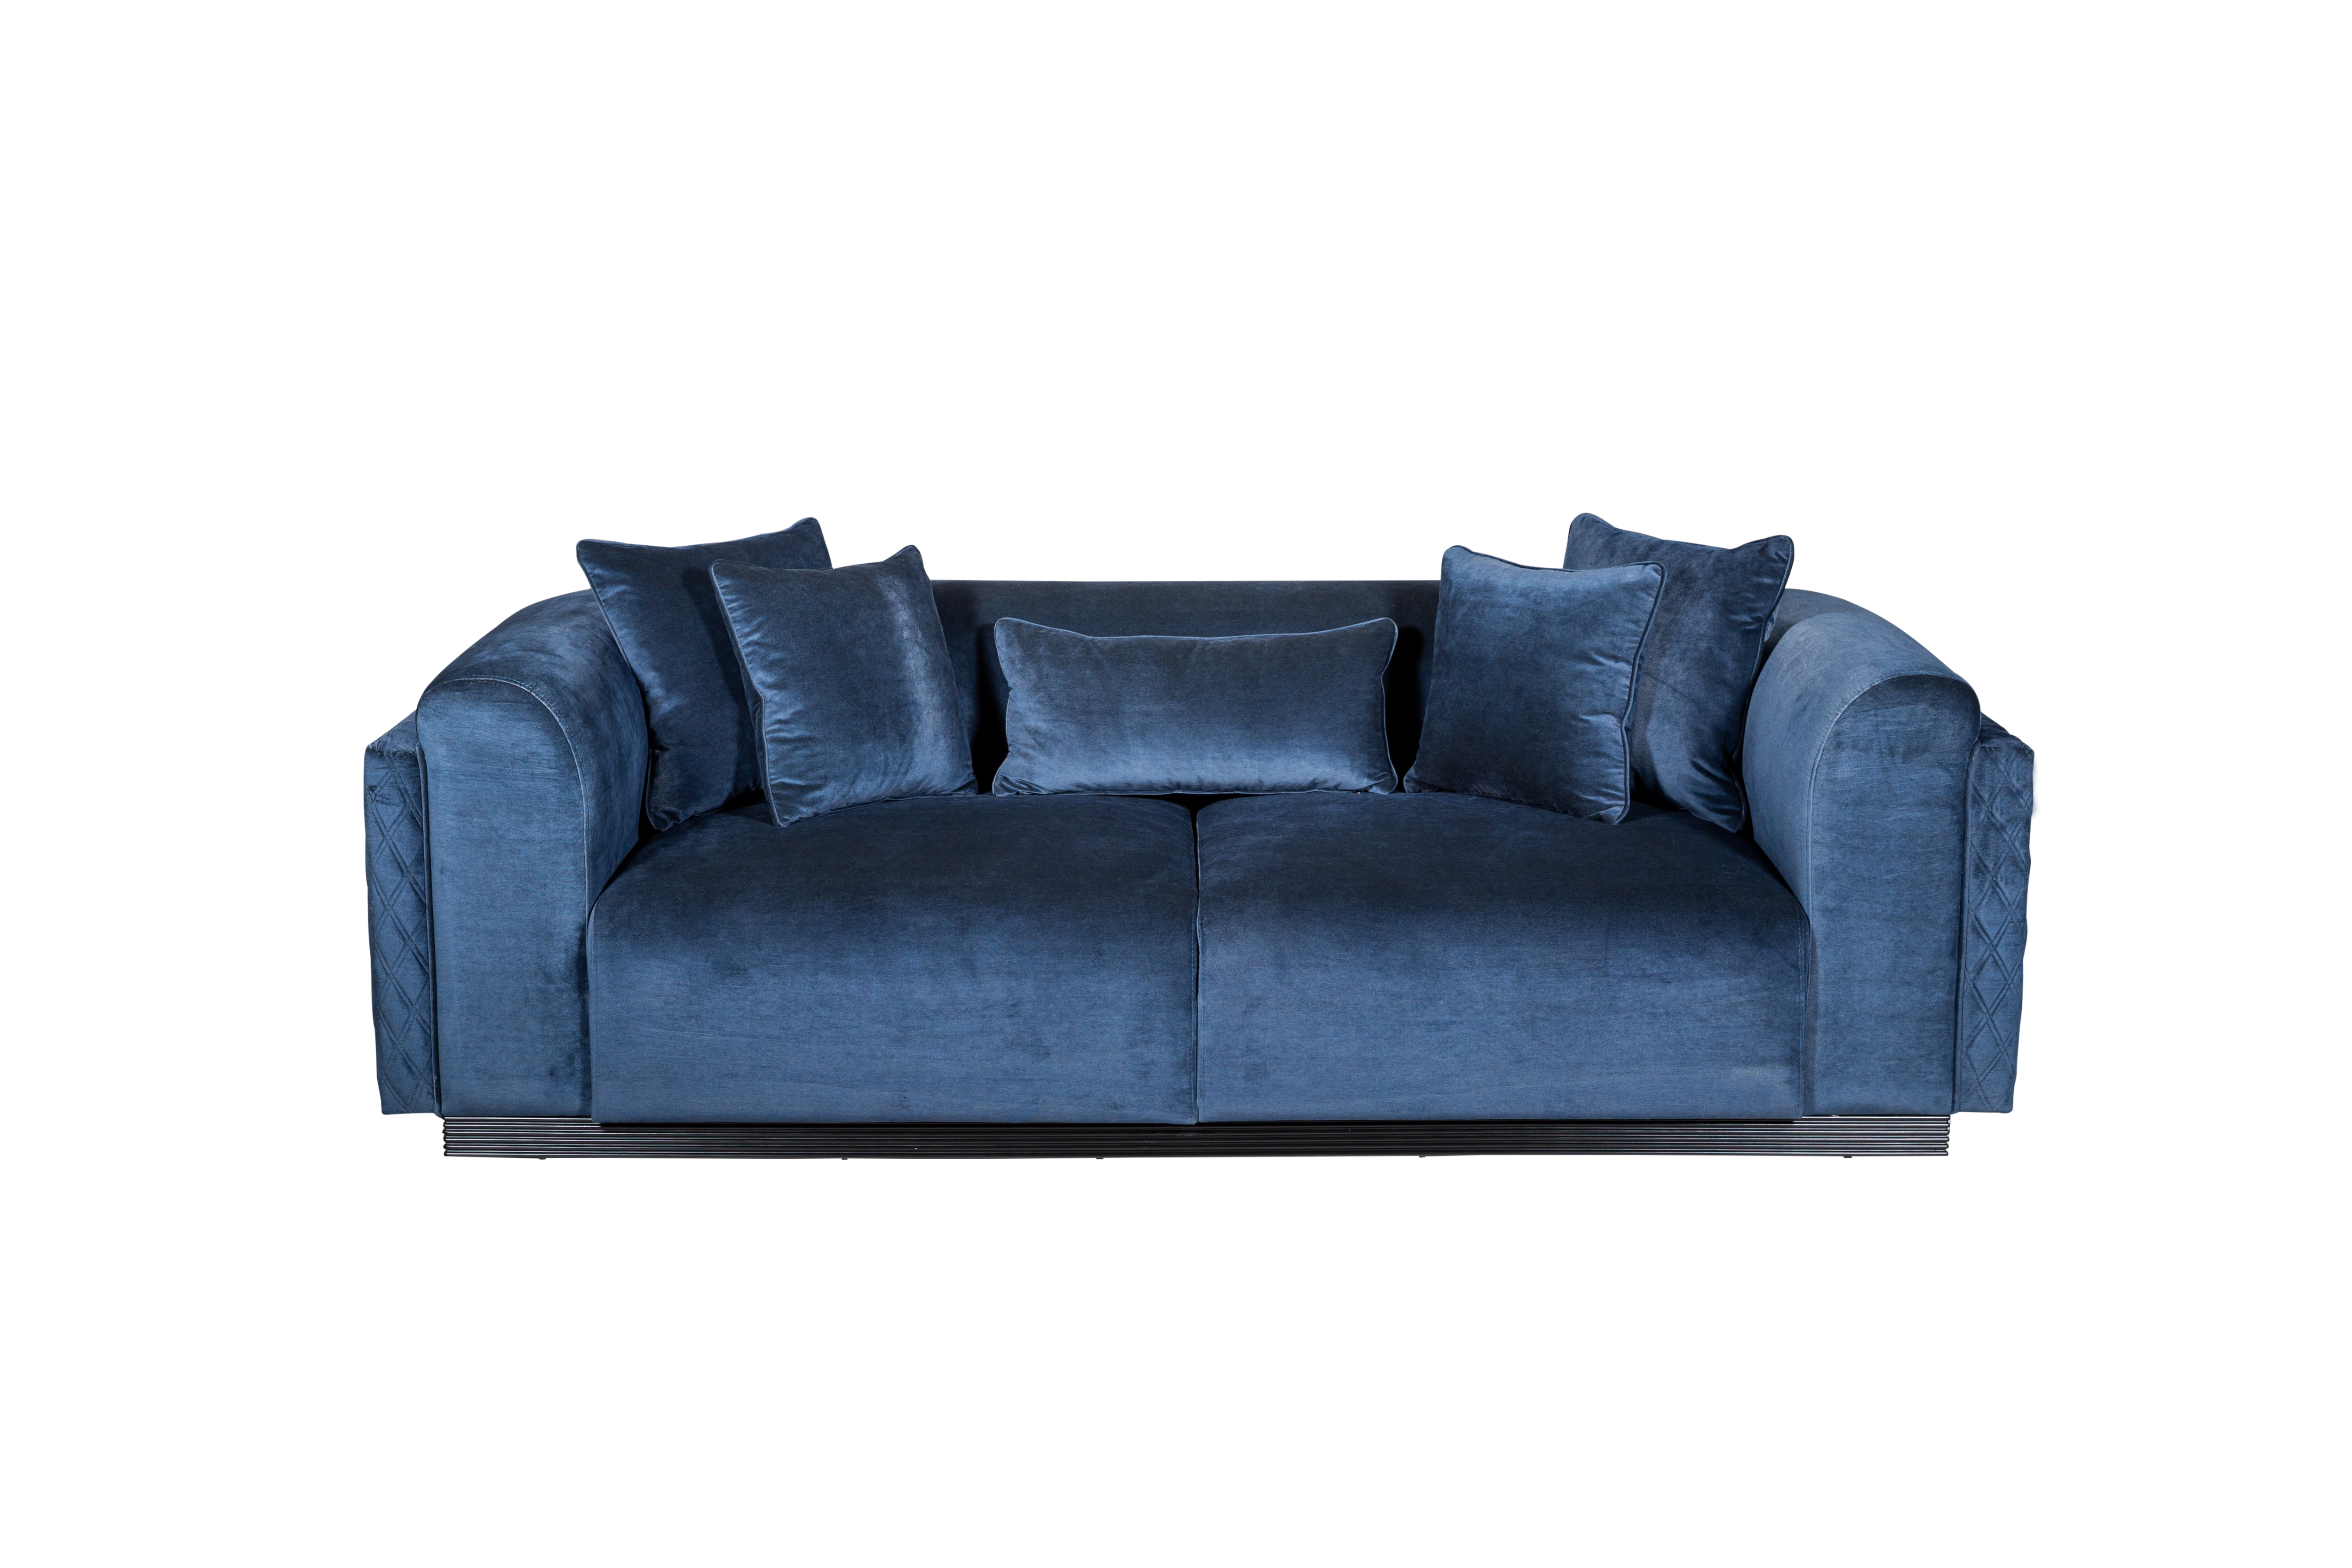 Lacivert Romano 3-seater sofa